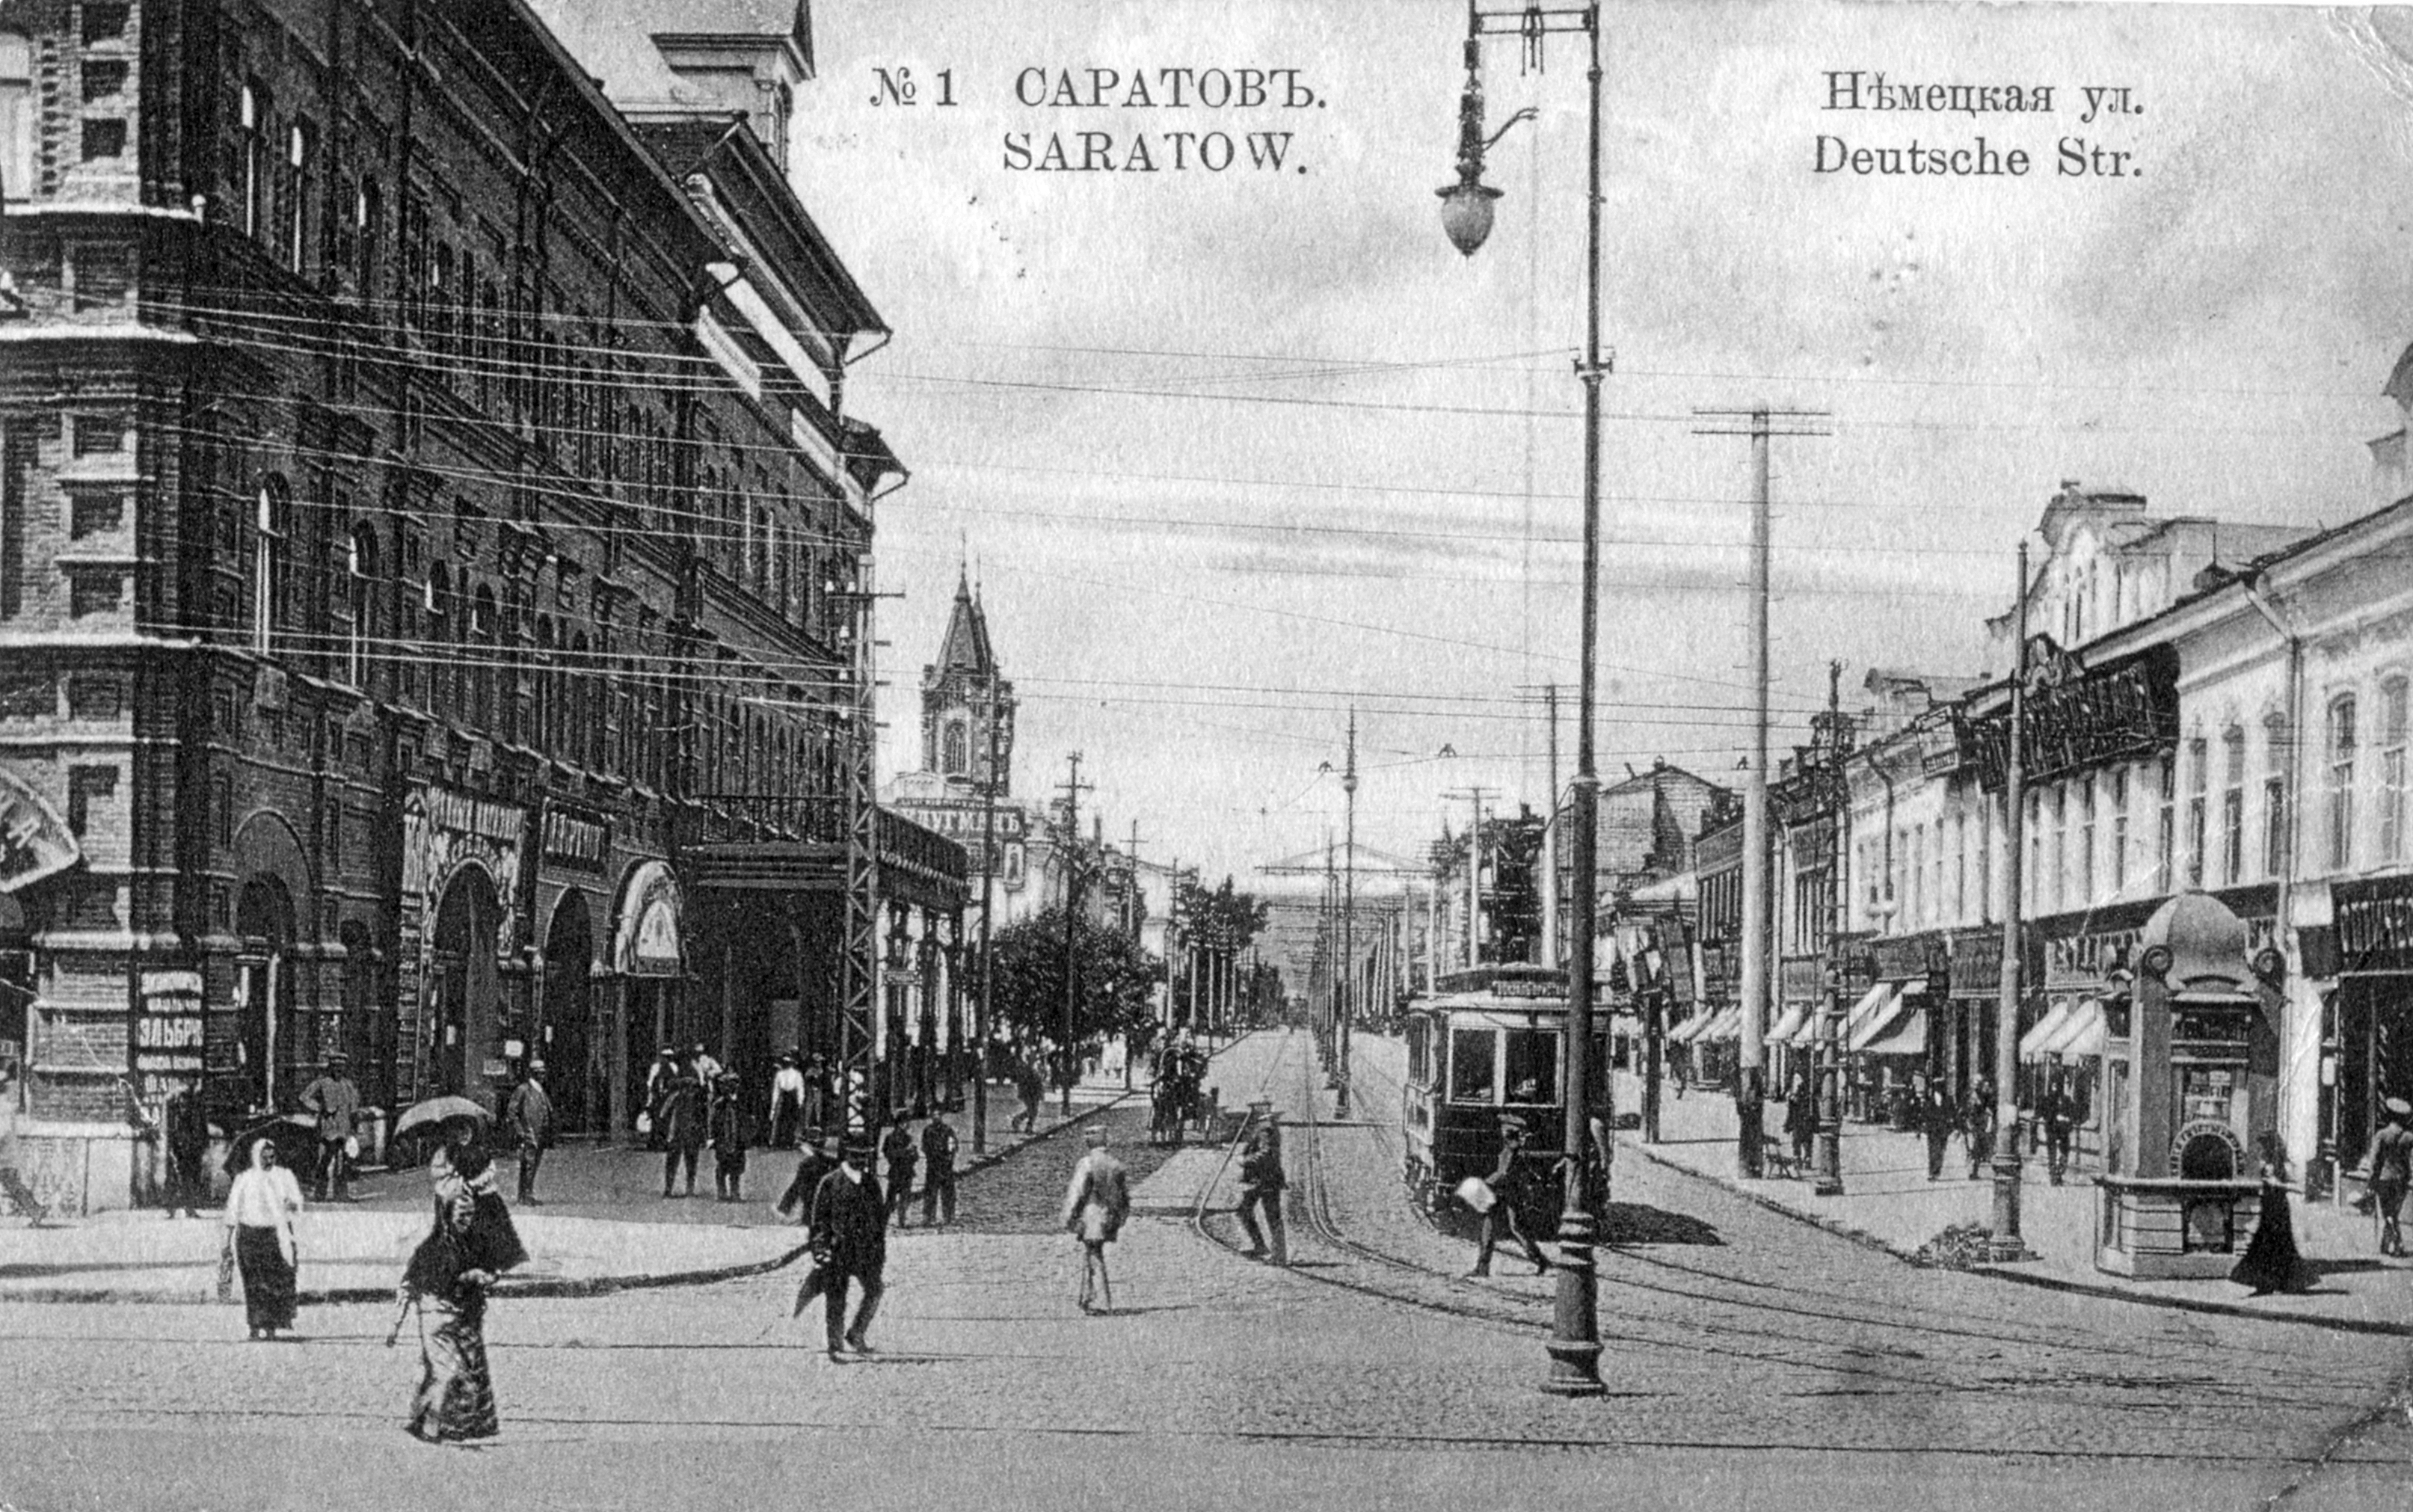 Название улиц до революции и после революции. Саратов в 1917. Старый Саратов немецкая улица. Революция 1917 года в Саратове. Саратов до революции 1917.